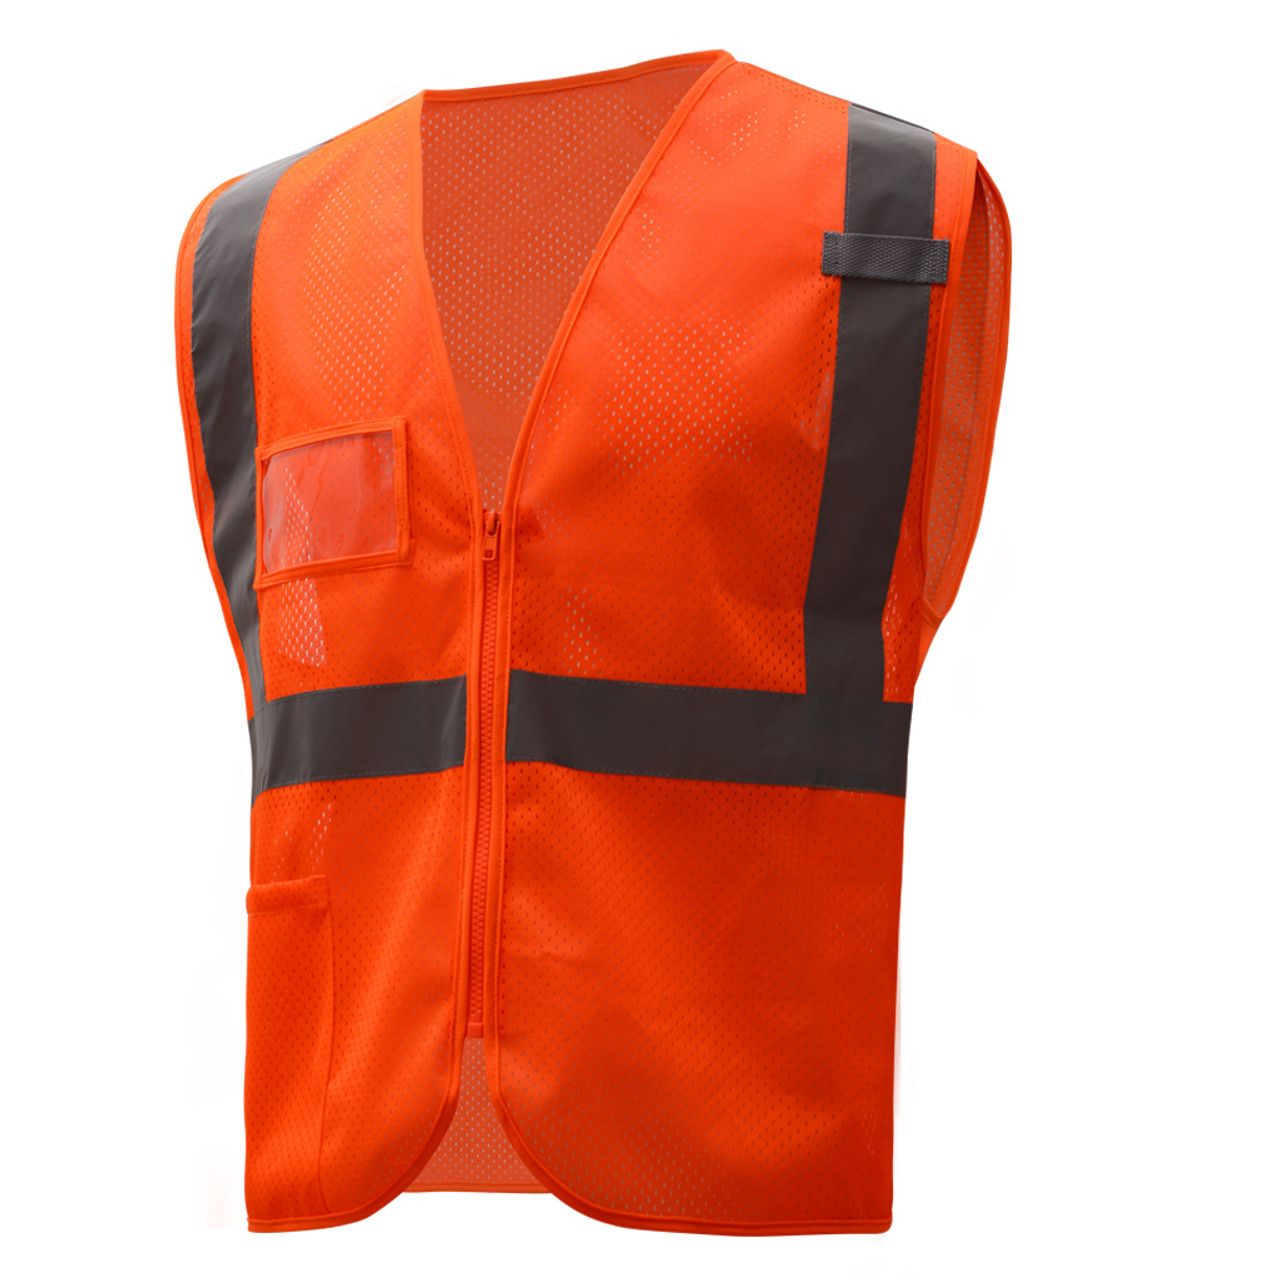 Printed Hi-Vis Mesh Safety Vest with 2” Reflective Strips and Pocket -  Orange